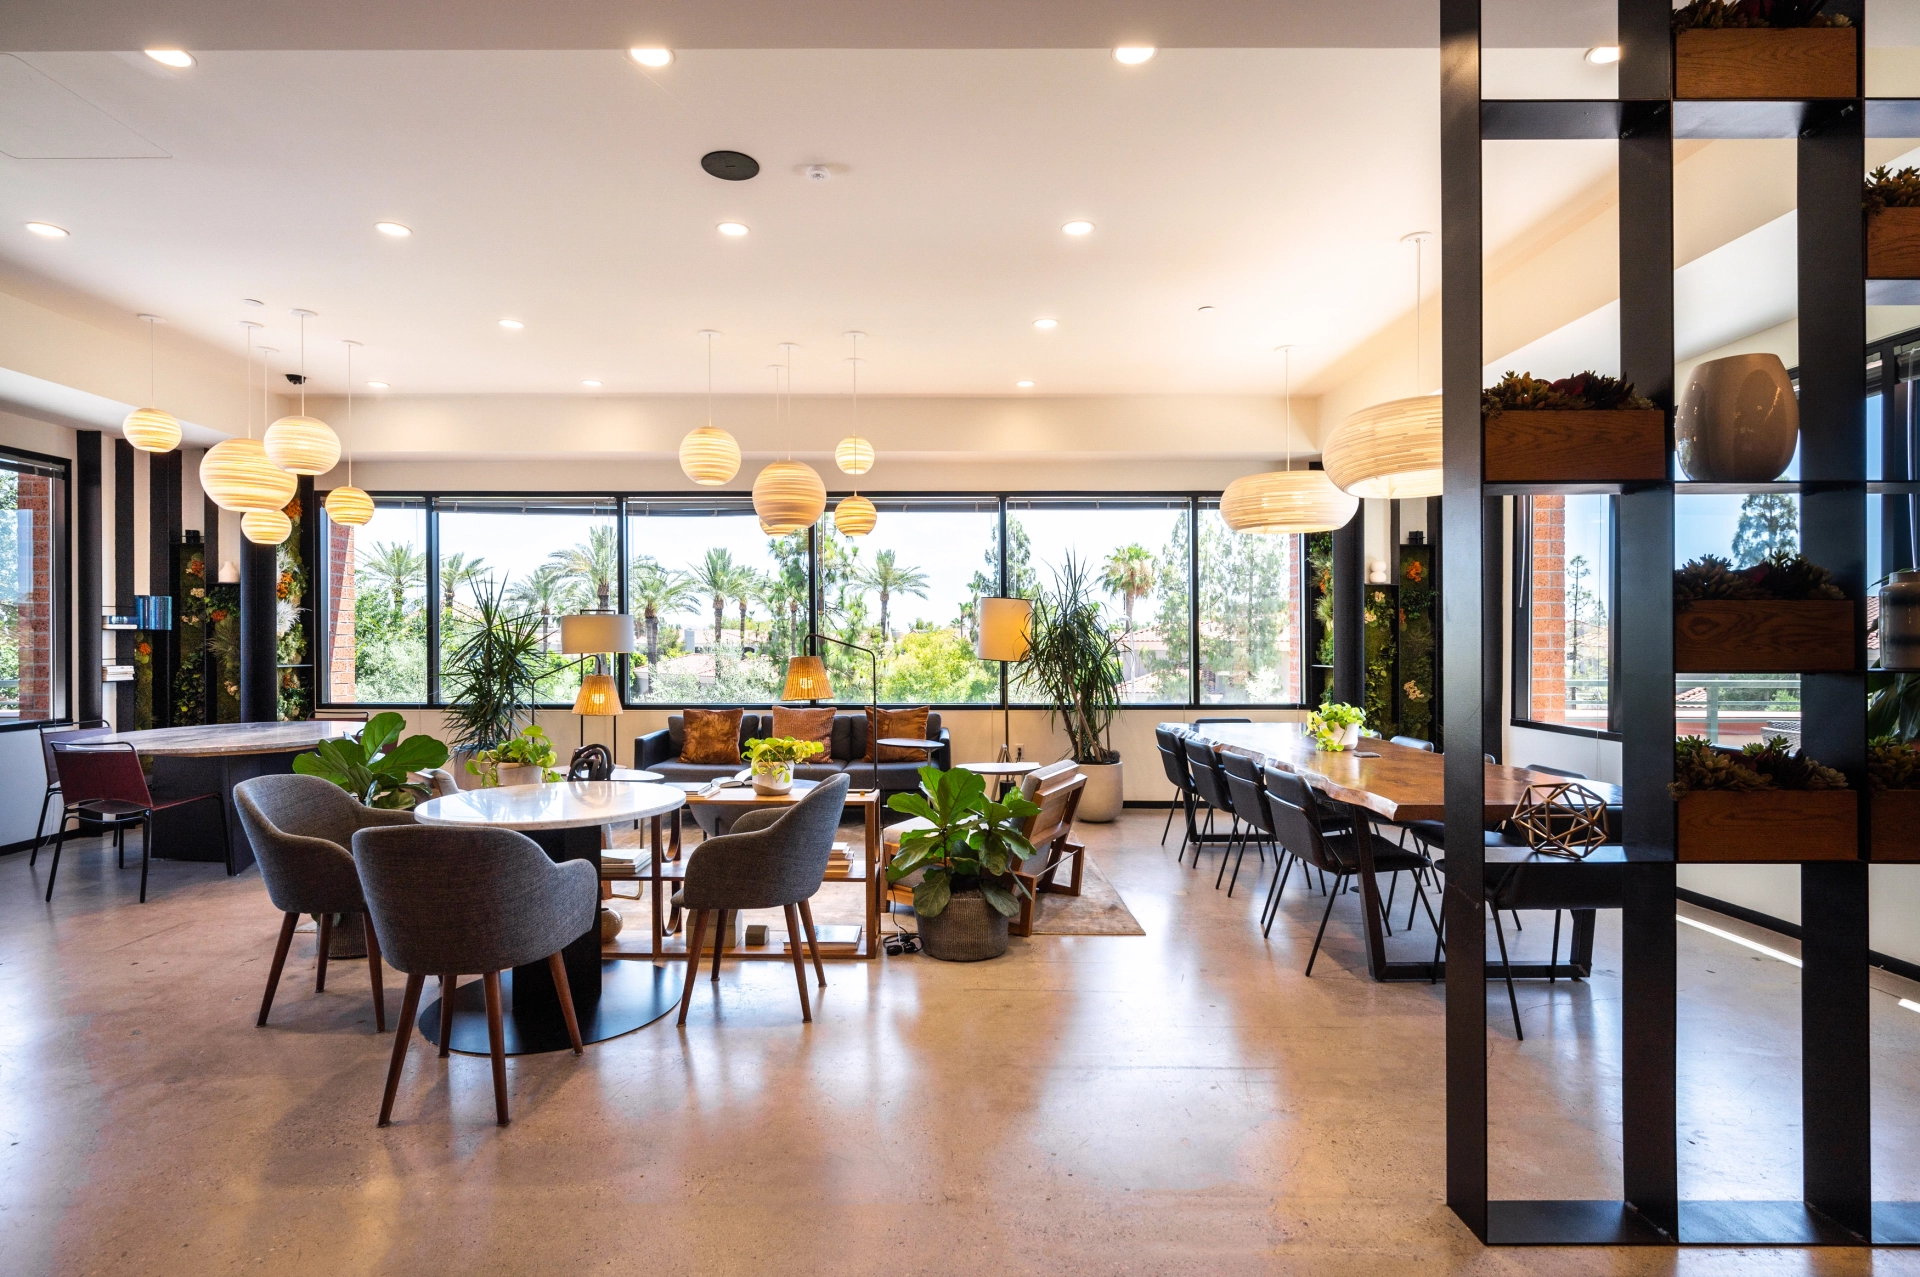 Une salle à manger Scottsdale avec une grande table parfaite pour une utilisation comme espace de travail ou bureau.